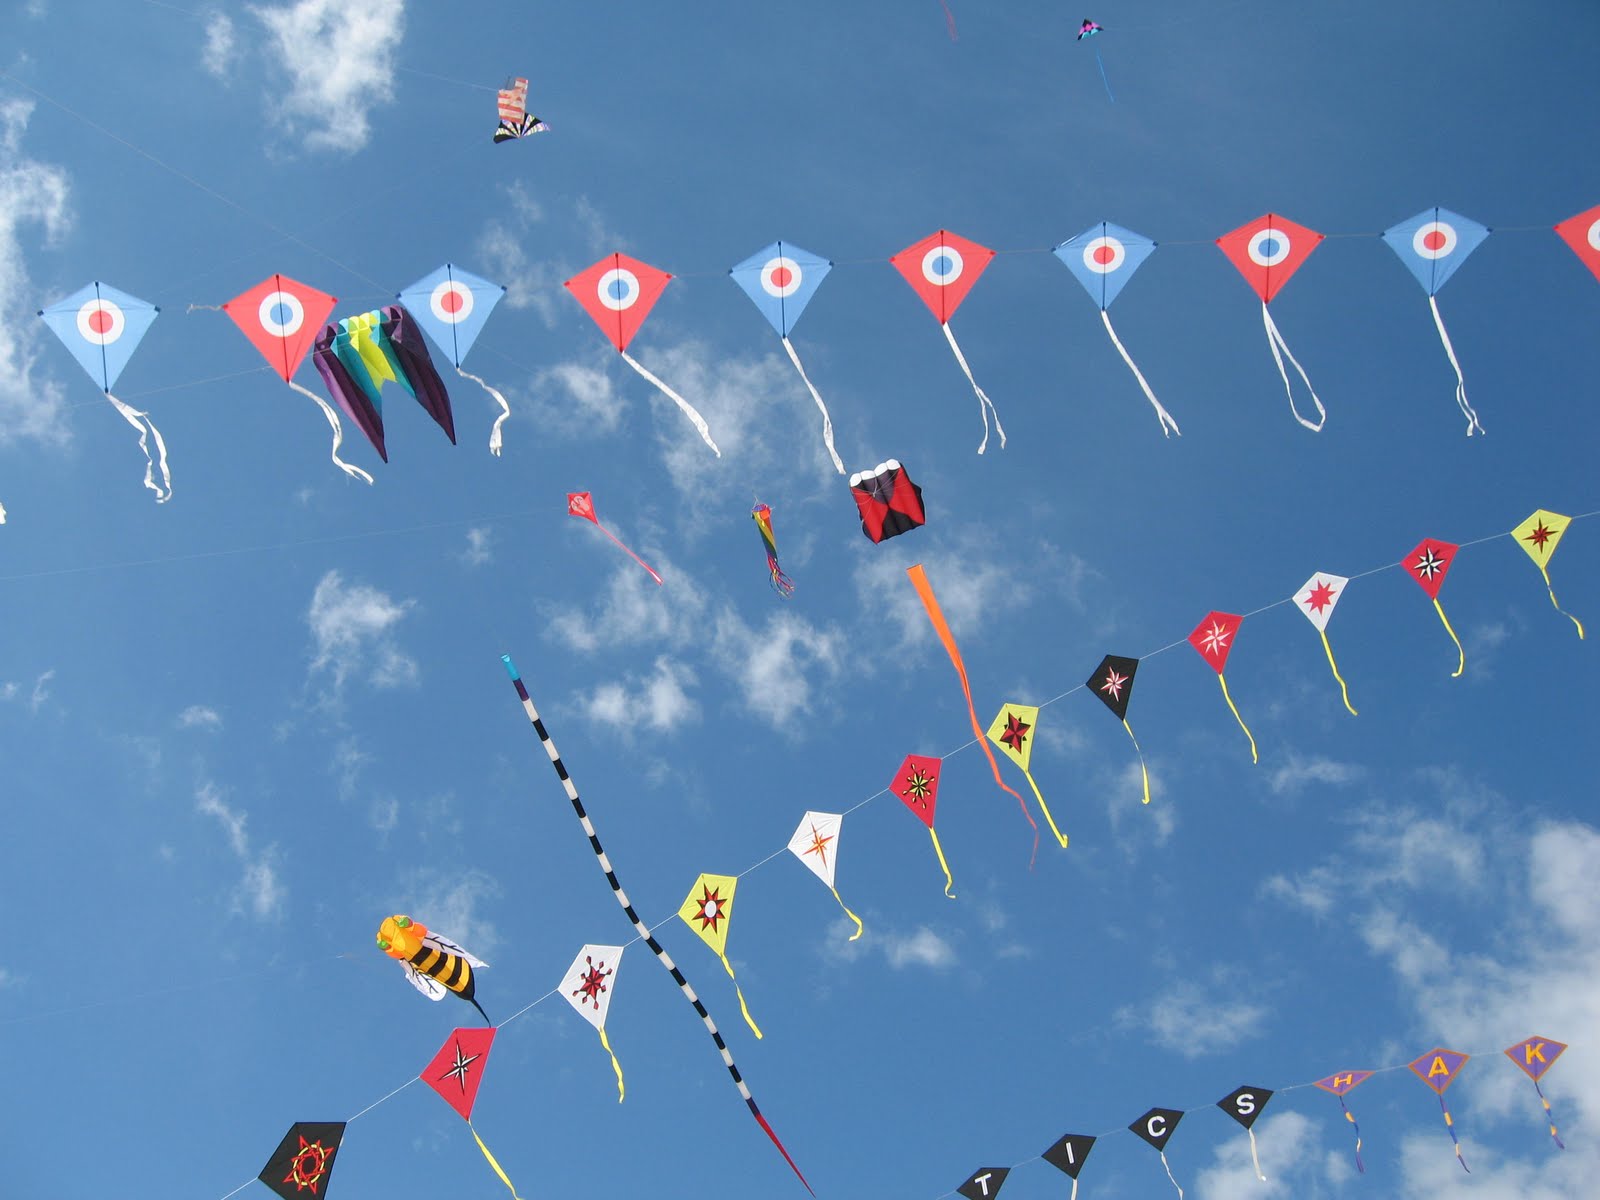 Soar High at the International Kite Festival 2017